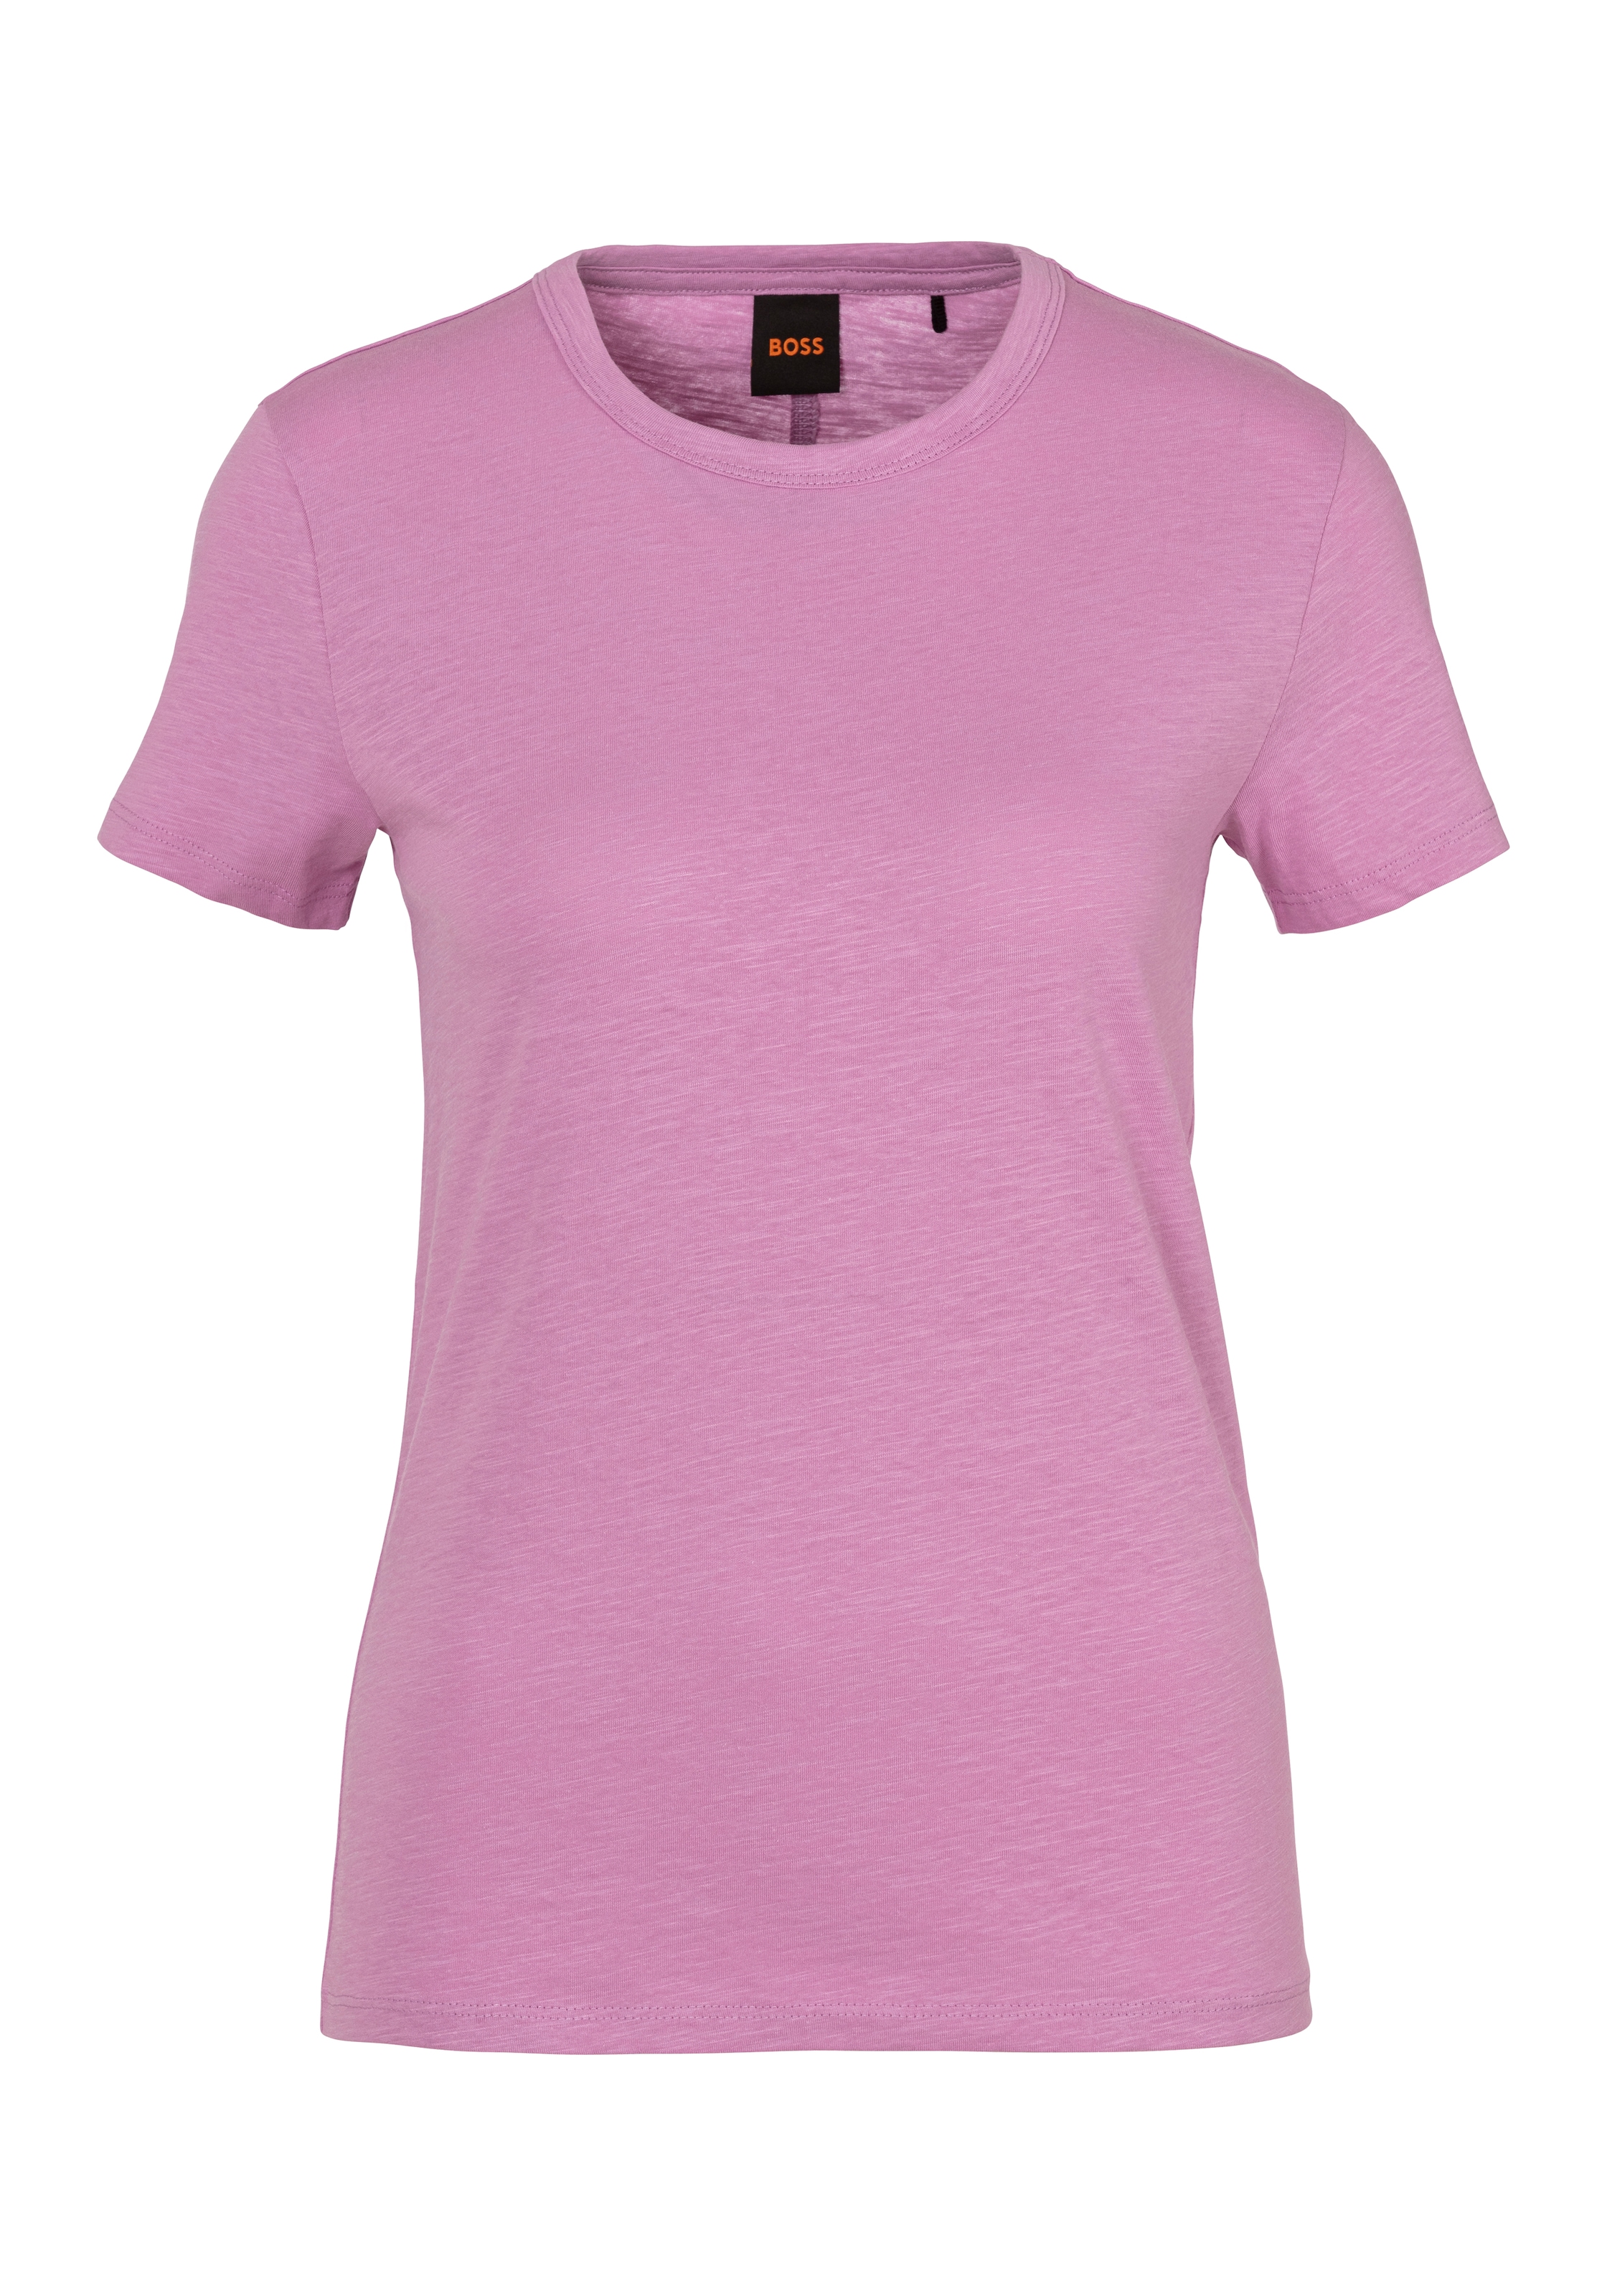 T-Shirt »C_Elogo Premium Damenmode«, mit kontrastfarbenem BOSS-Schriftzug